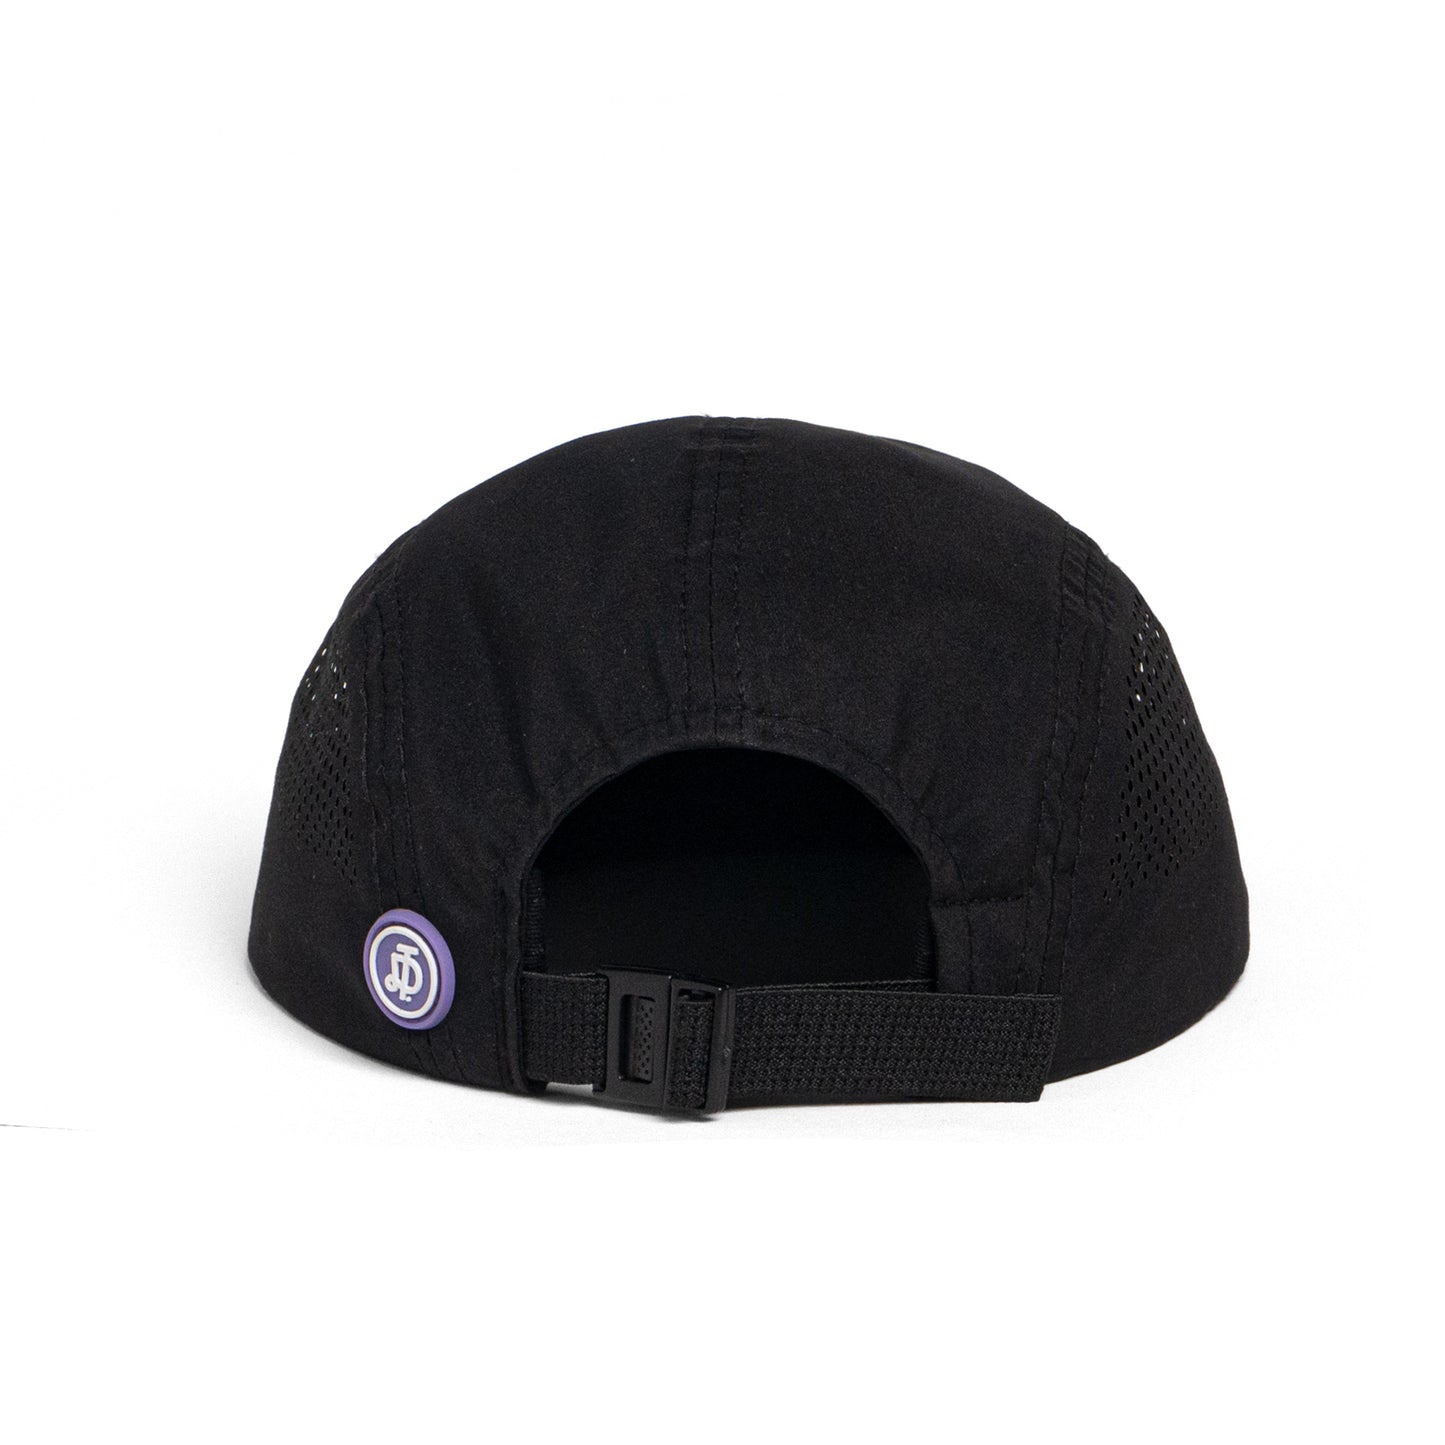 SIGNATURE LOGO CAMP CAP / BLACK